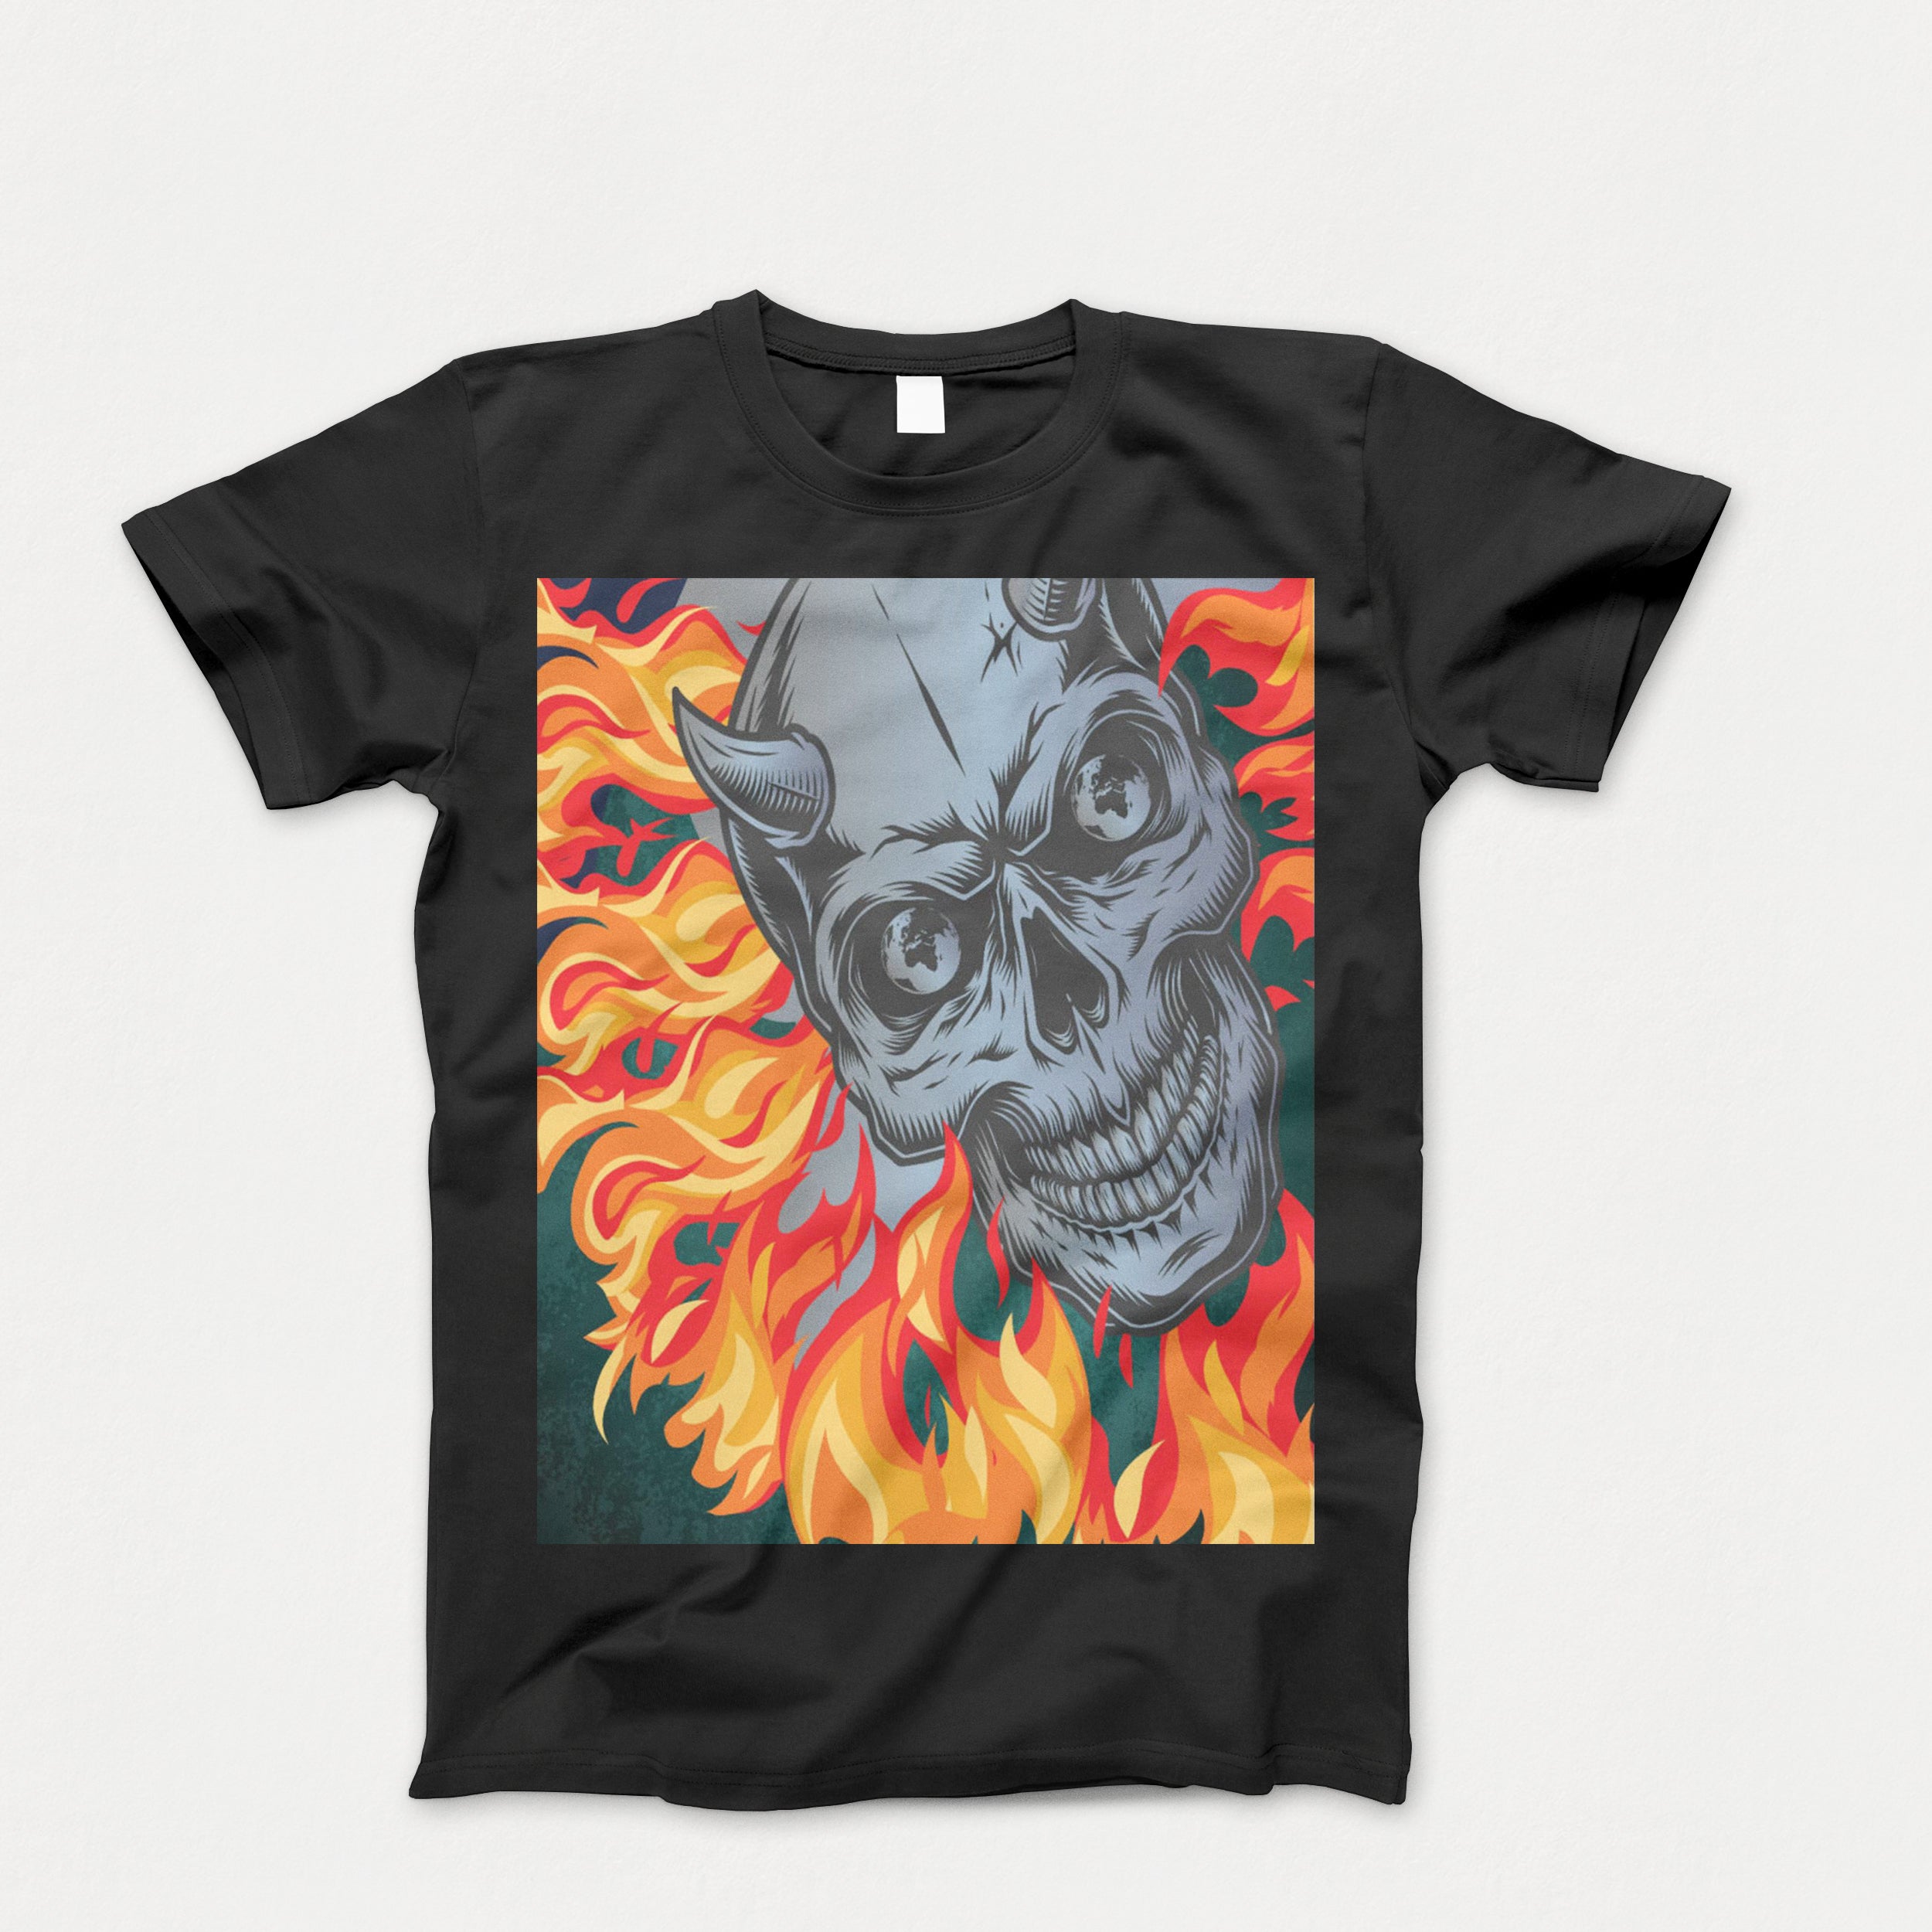 Kids Skeleton Skull Tee Shirt